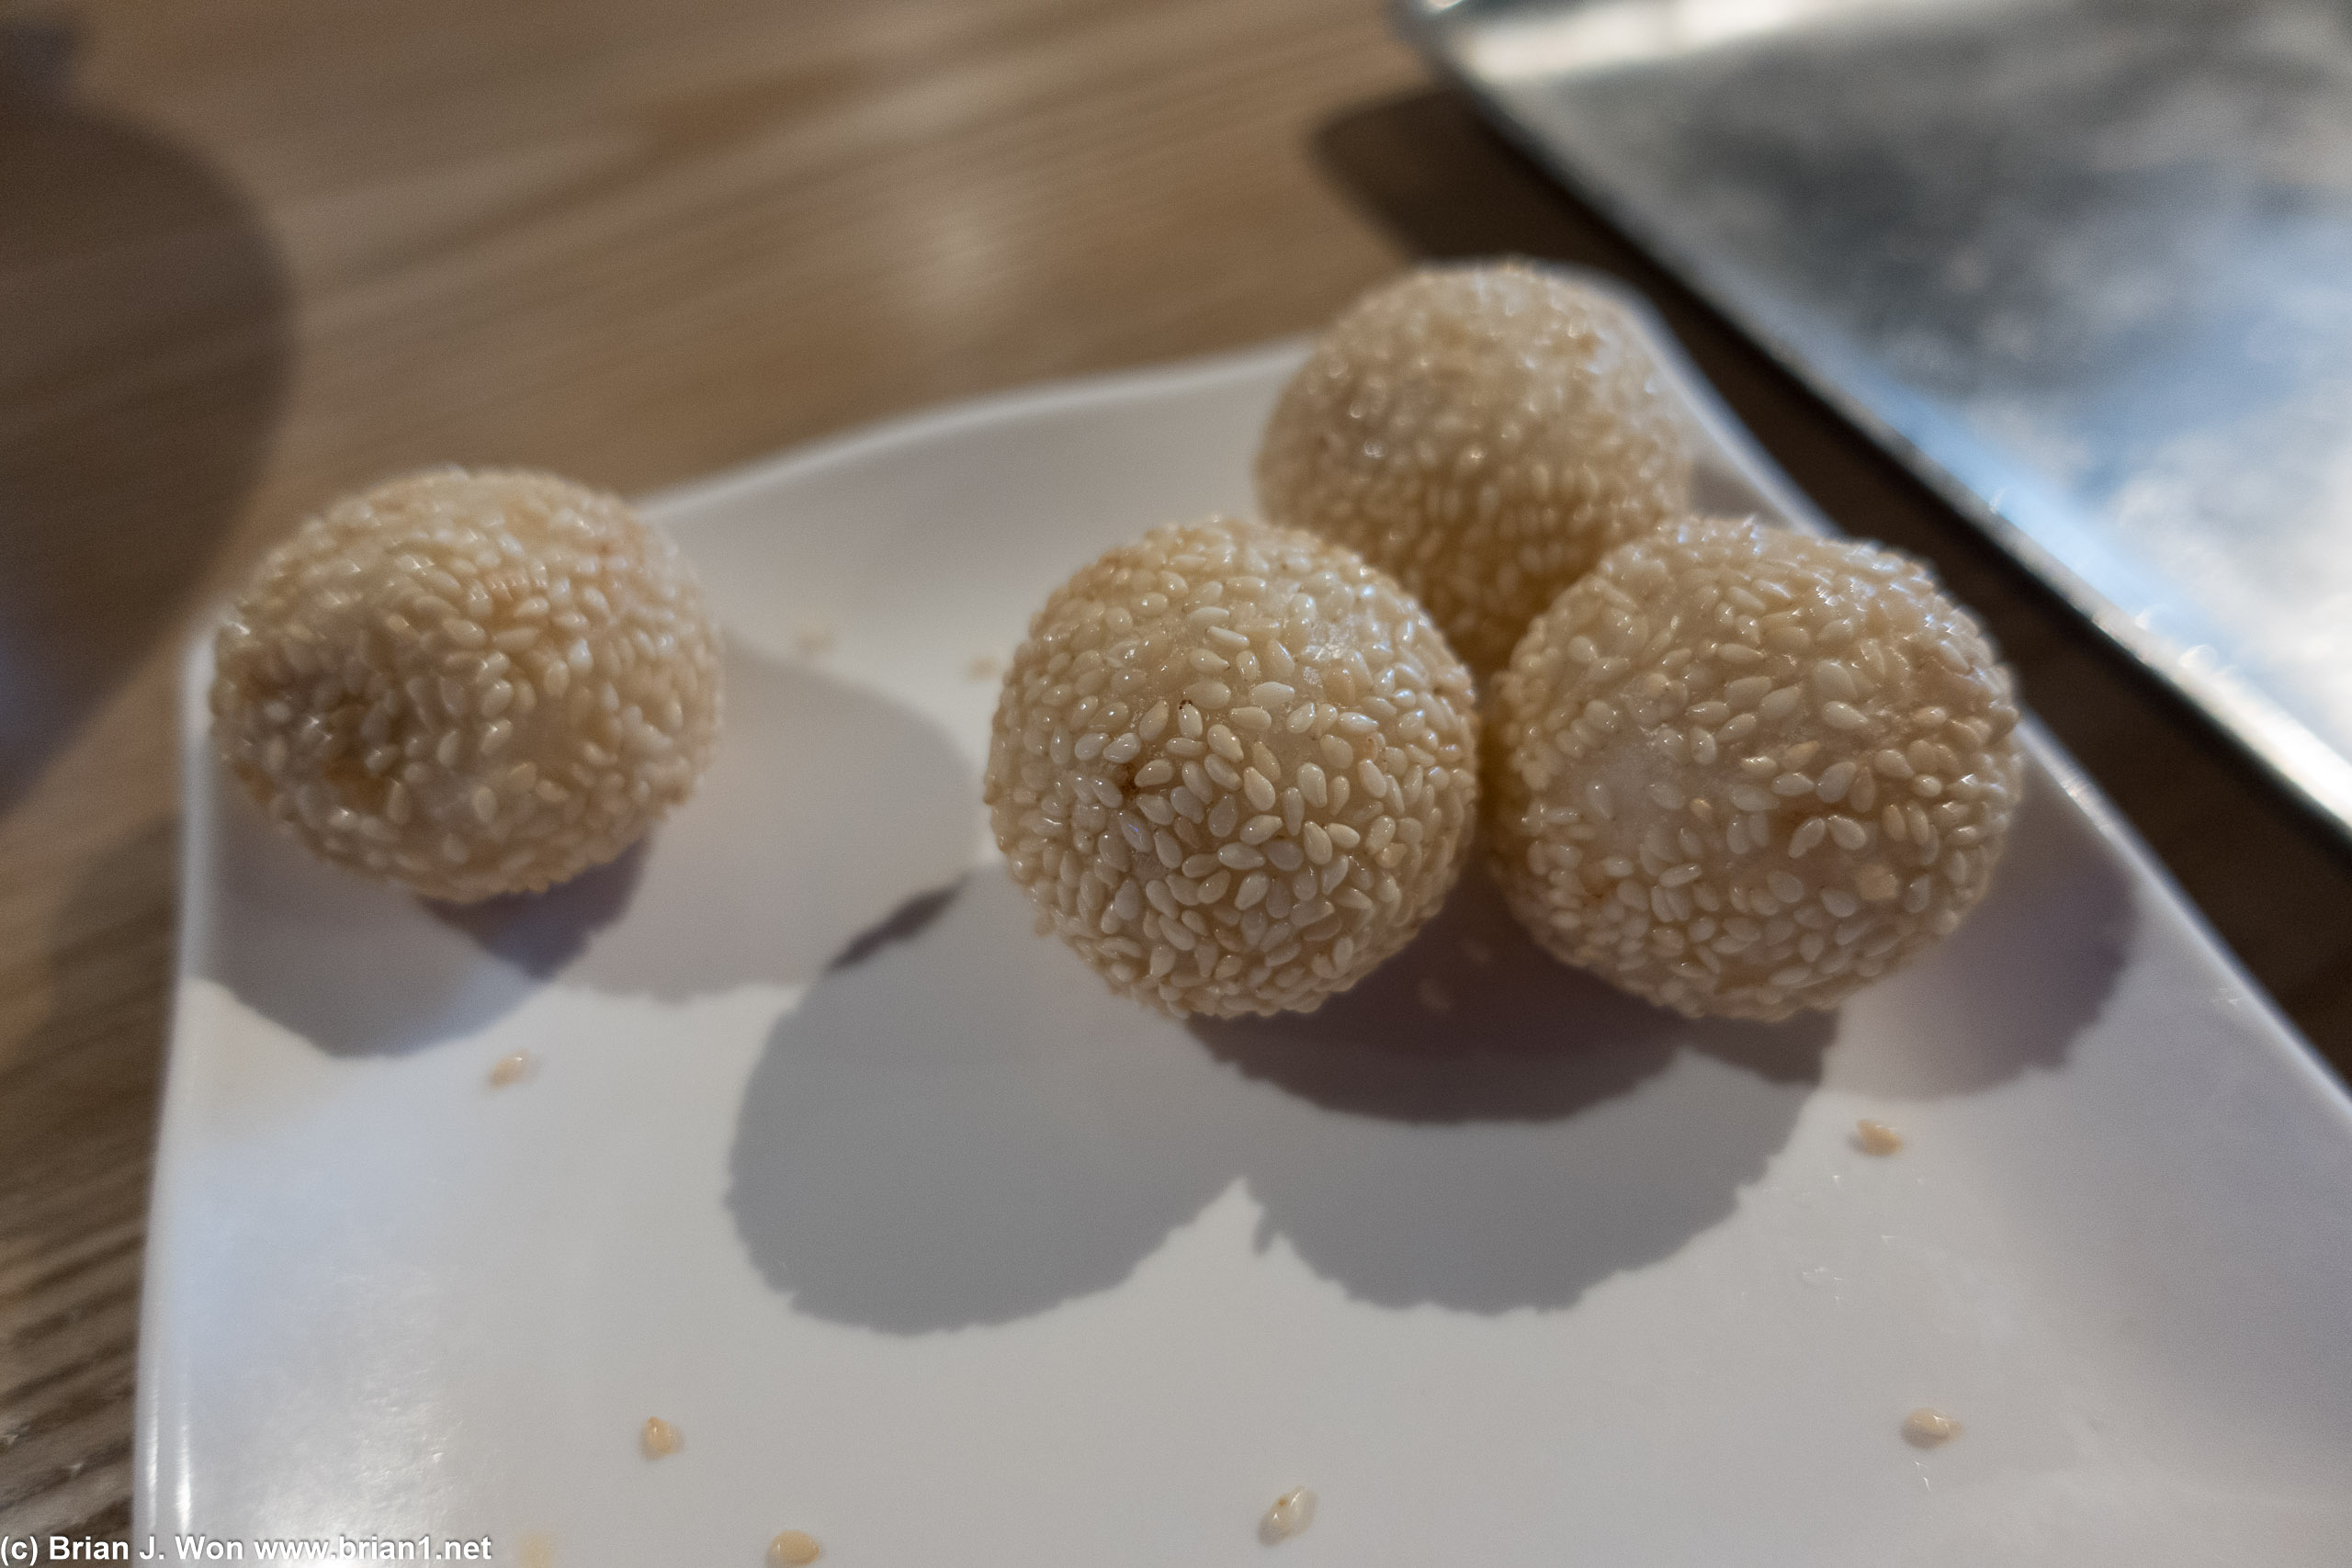 Sesame balls for dessert were okay.